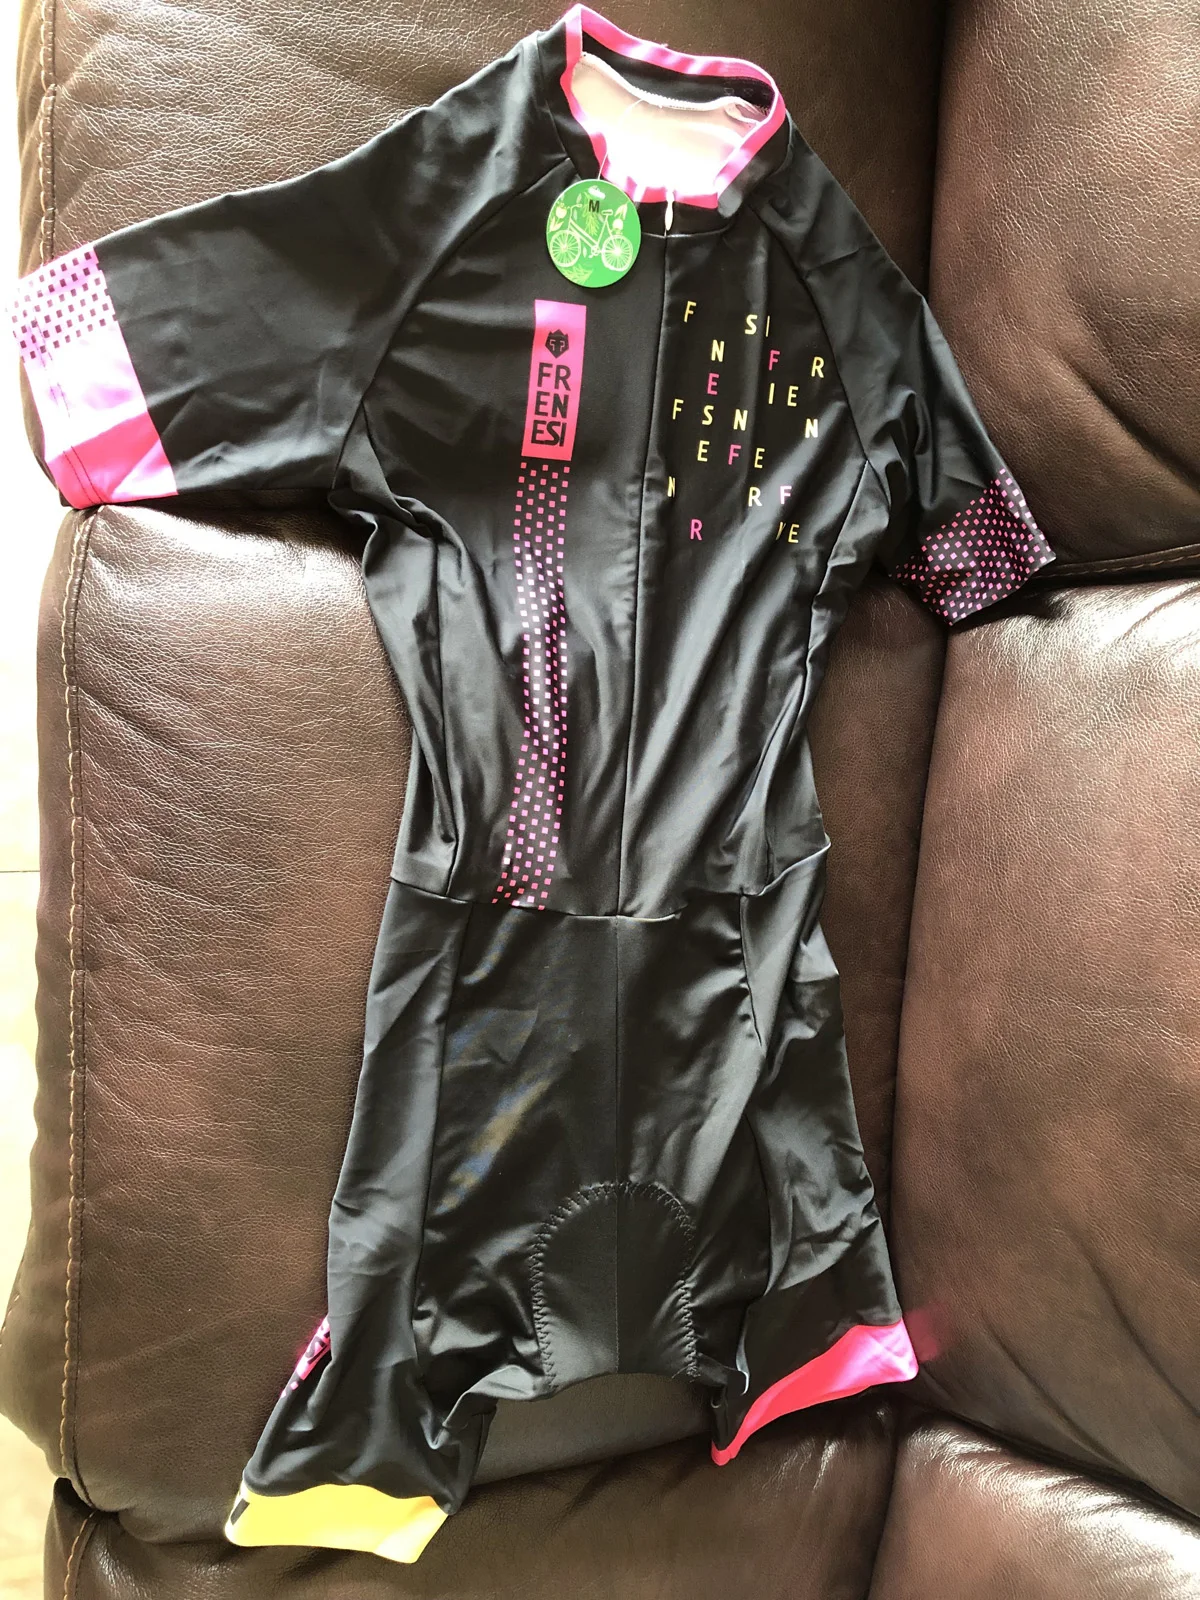 Pro Team триатлонный костюм женский Велоспорт шерстяной облегающий костюм комбинезон Велосипедное трико Ropa ciclismo набор розовый гель pad 043